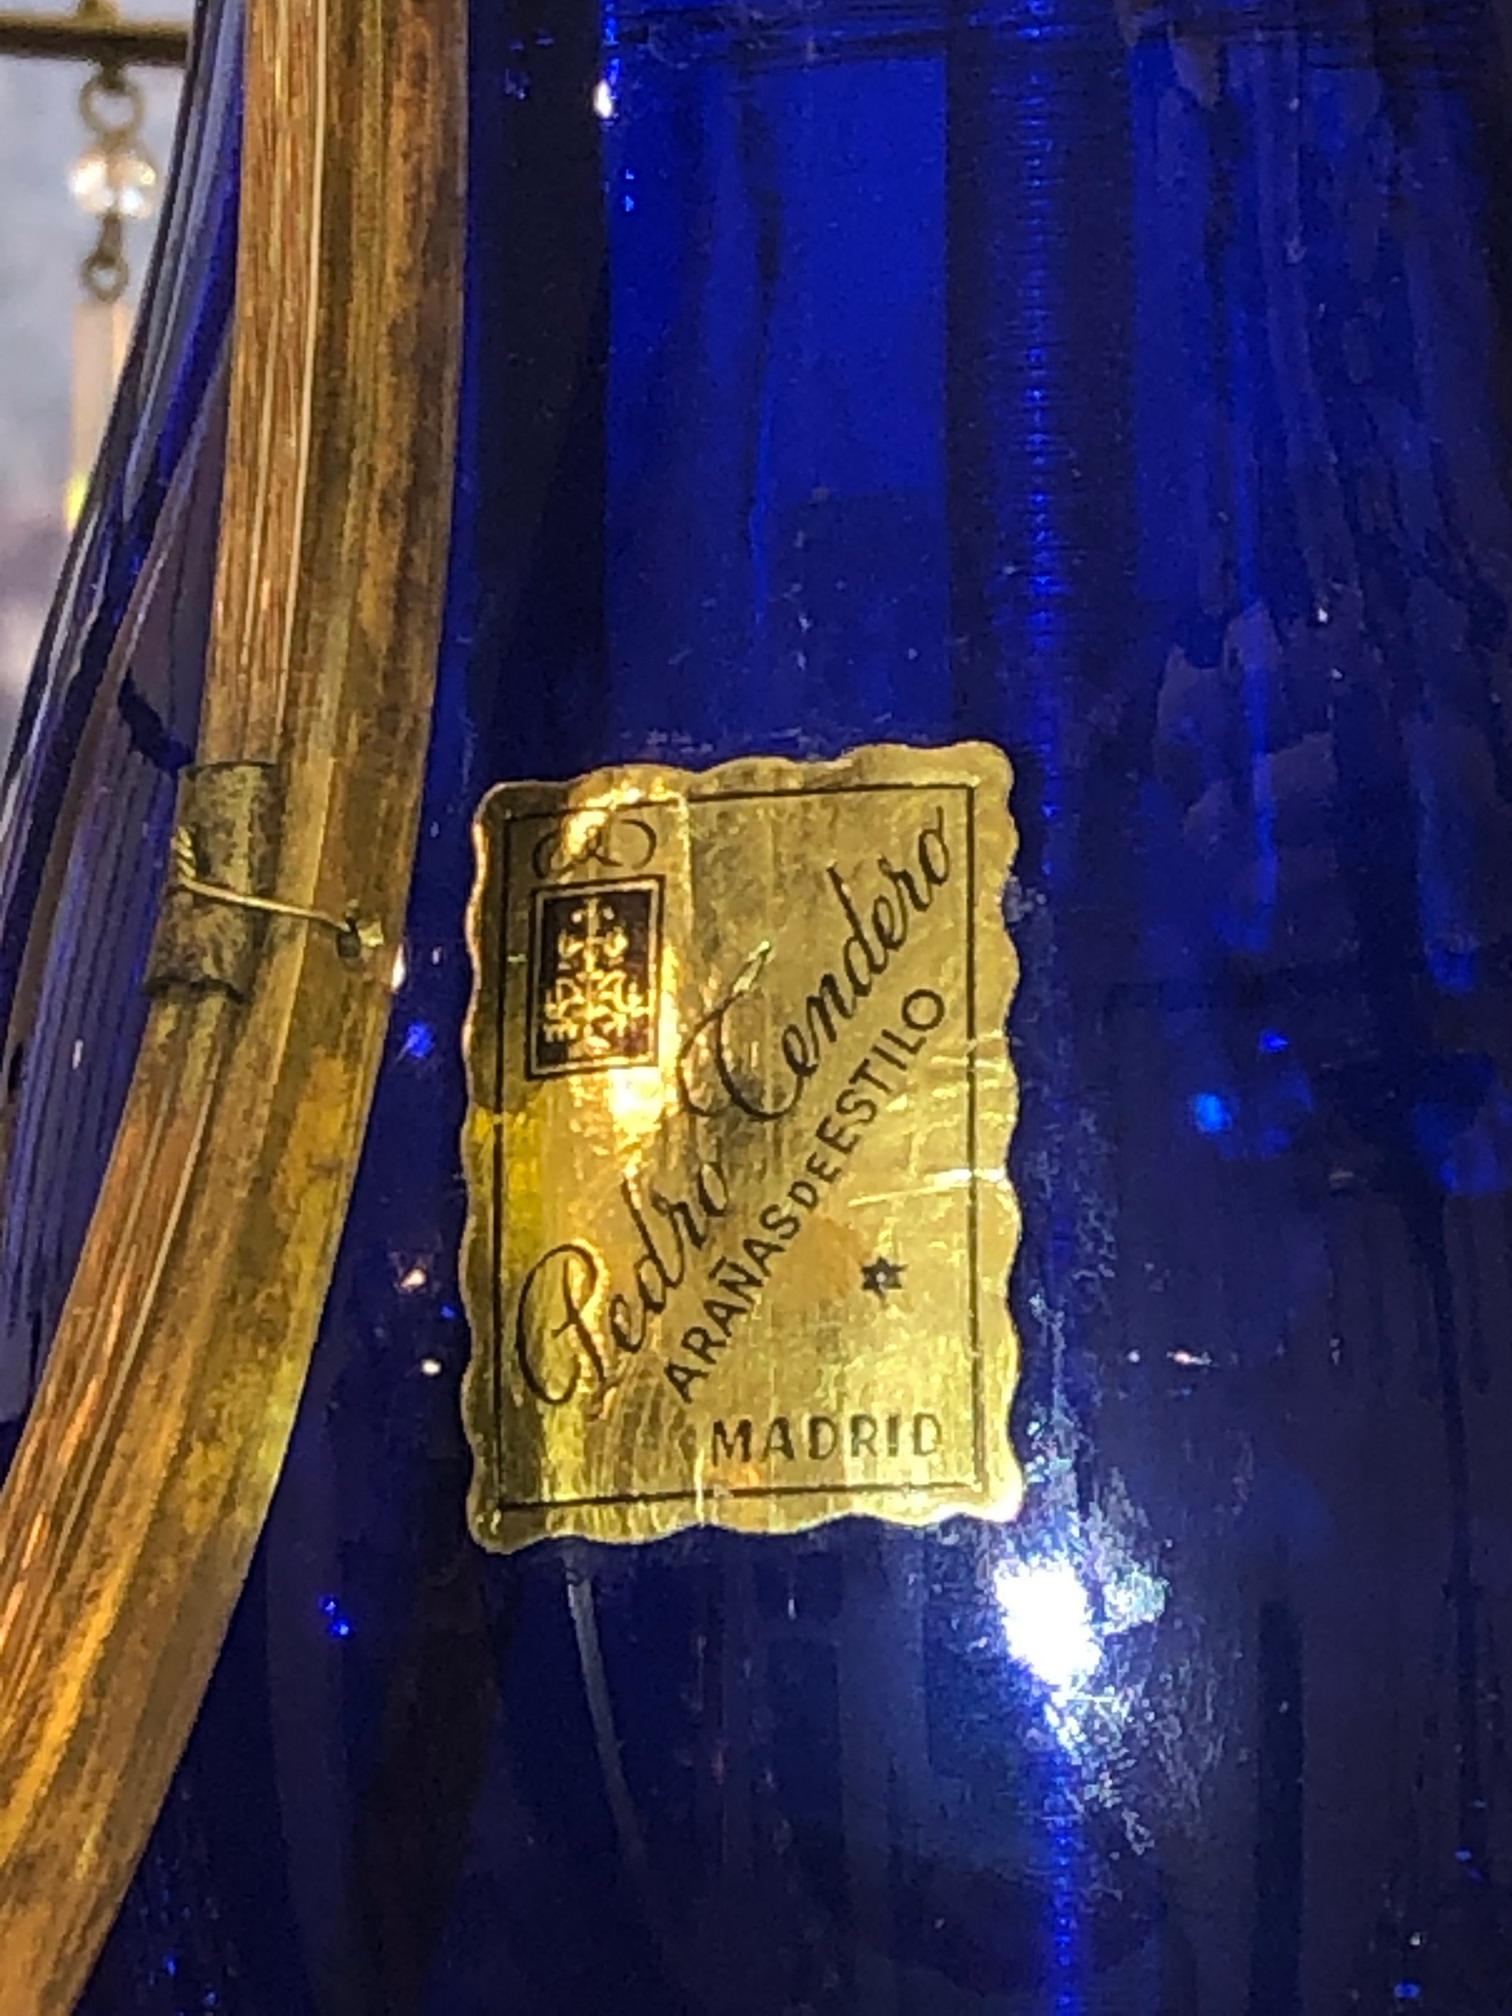 Un fin et élégant lustre russe en bronze doré et cristal ayant six bras dans un style néoclassique en verre translucide et bleu. Russie, vers 1880.
Dimensions : Hauteur 49